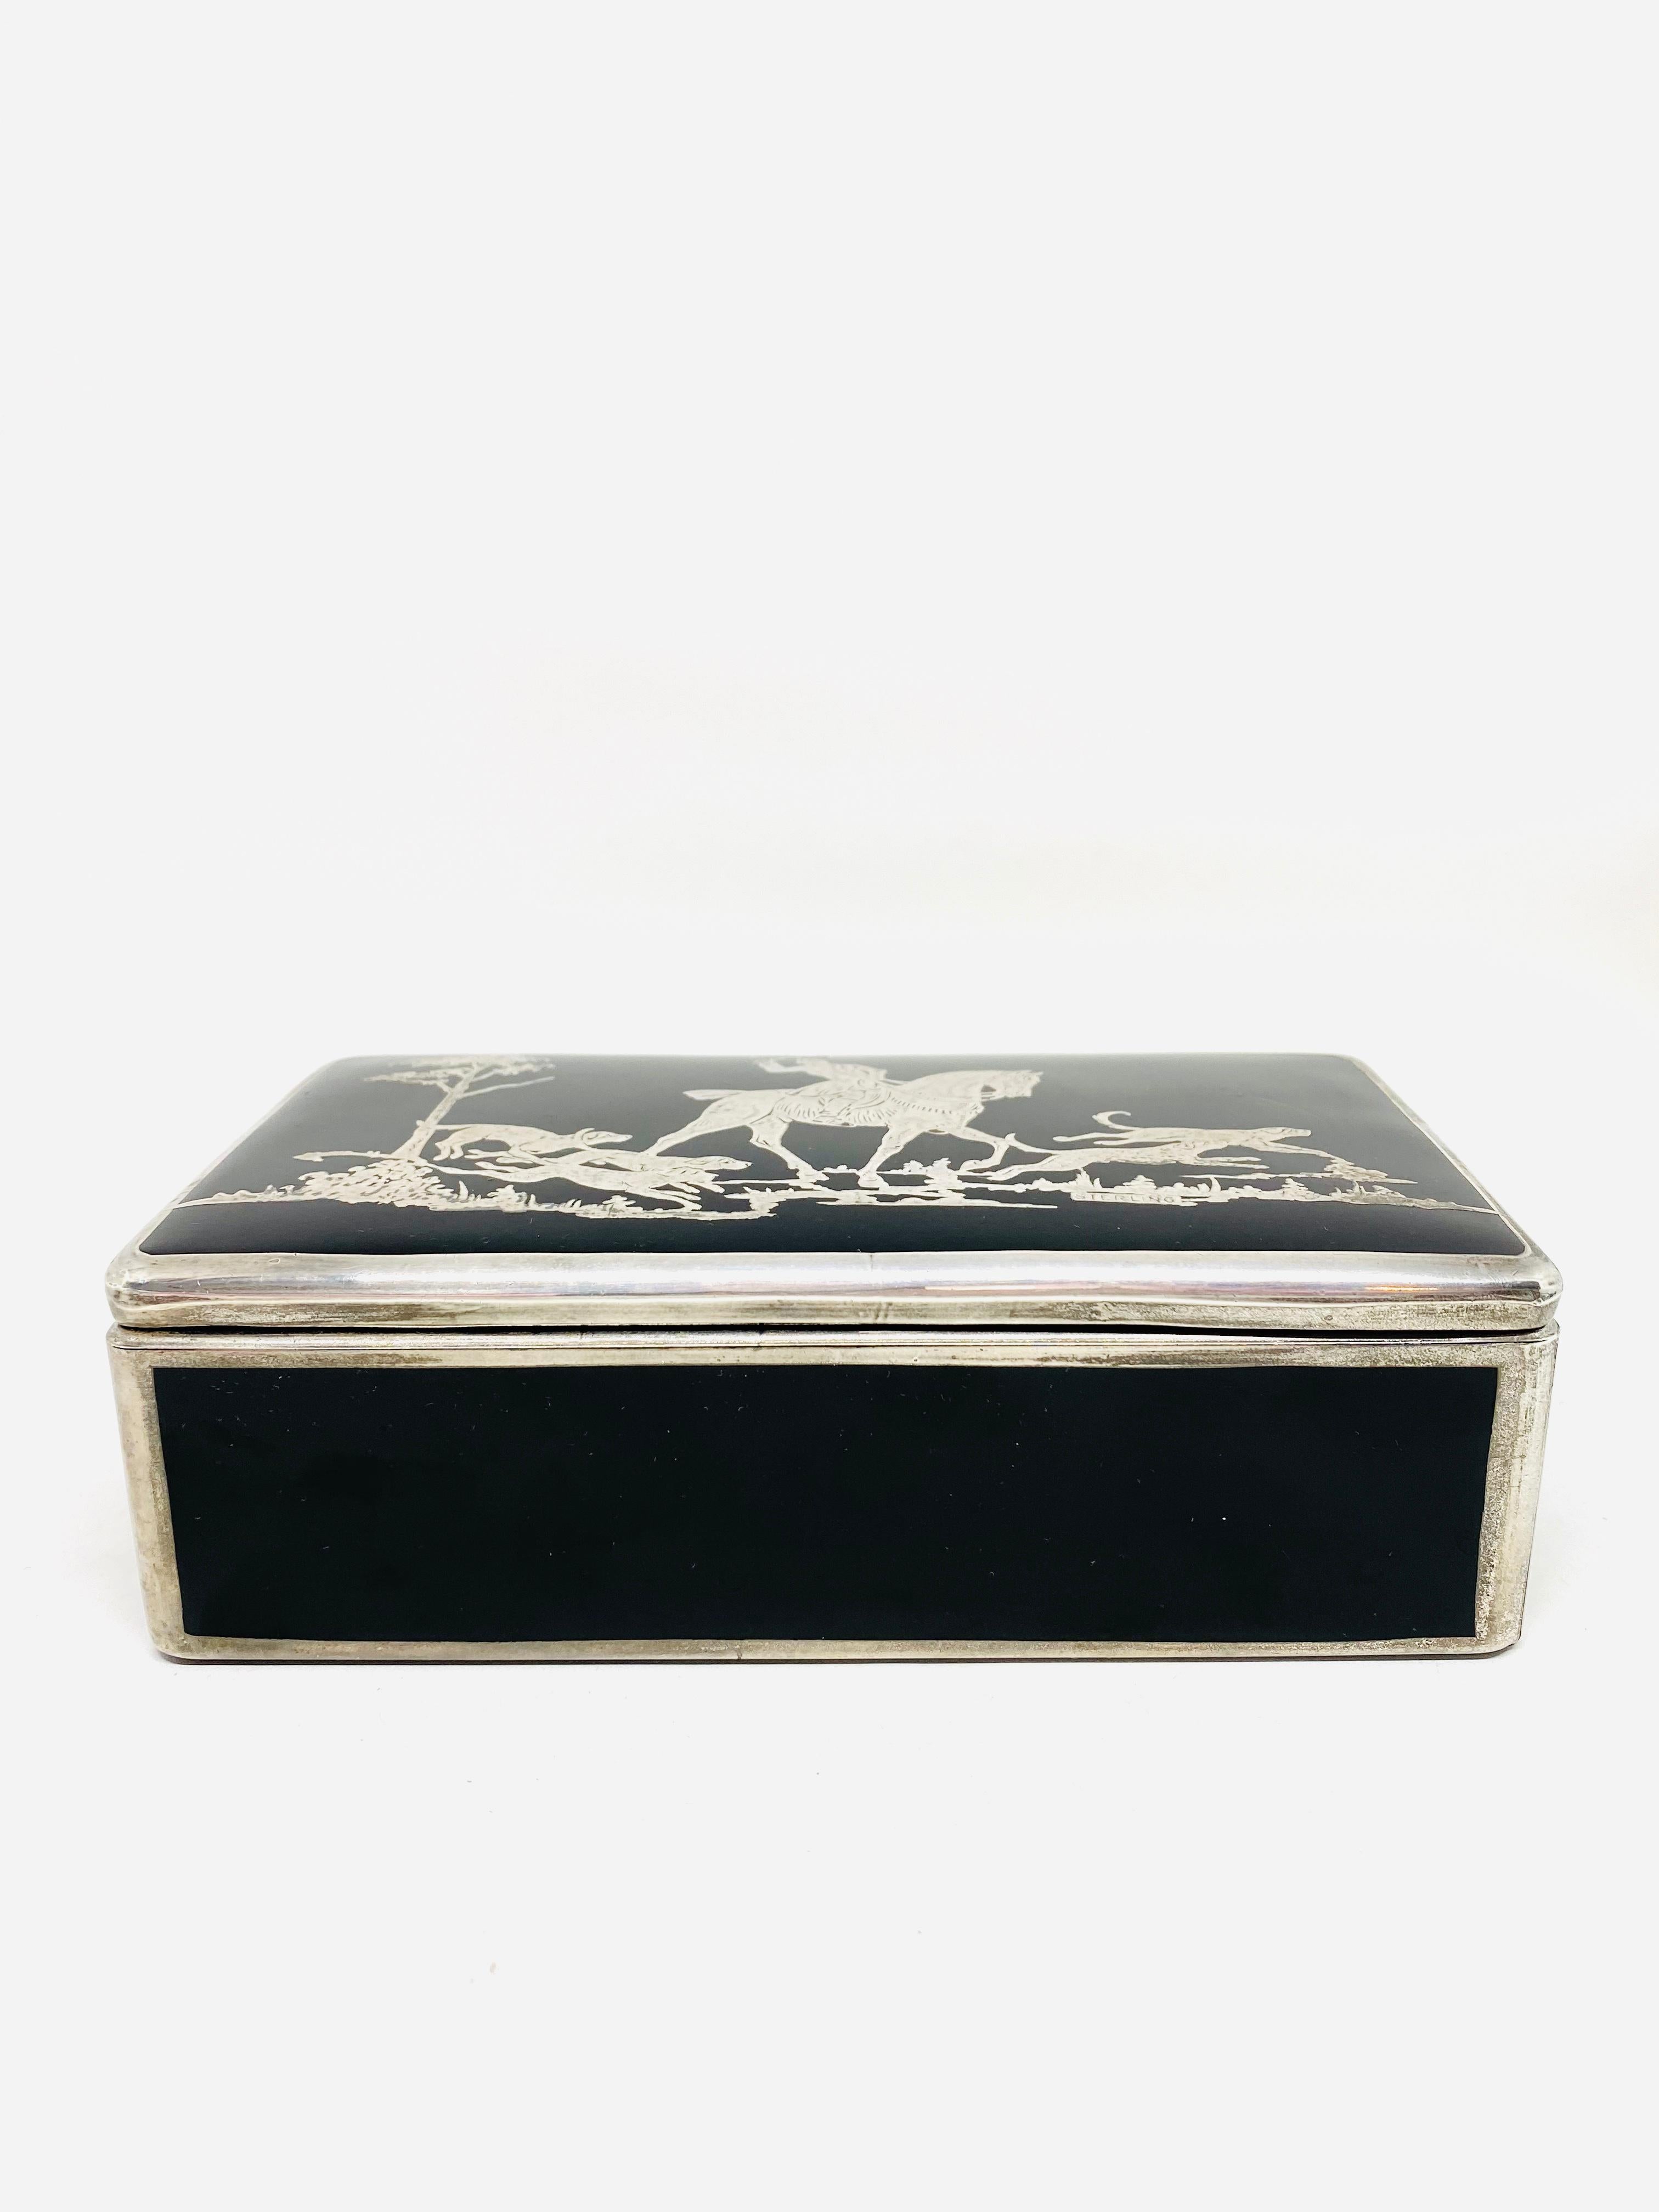 1920er Jahre böhmische Sterling Silber und Glas-Schmuck-Box

Einzelheiten zum Produkt:
Schwarzer Glaskasten mit Sterlingsilber-Overlay
Jagdszene von Hand gemacht
